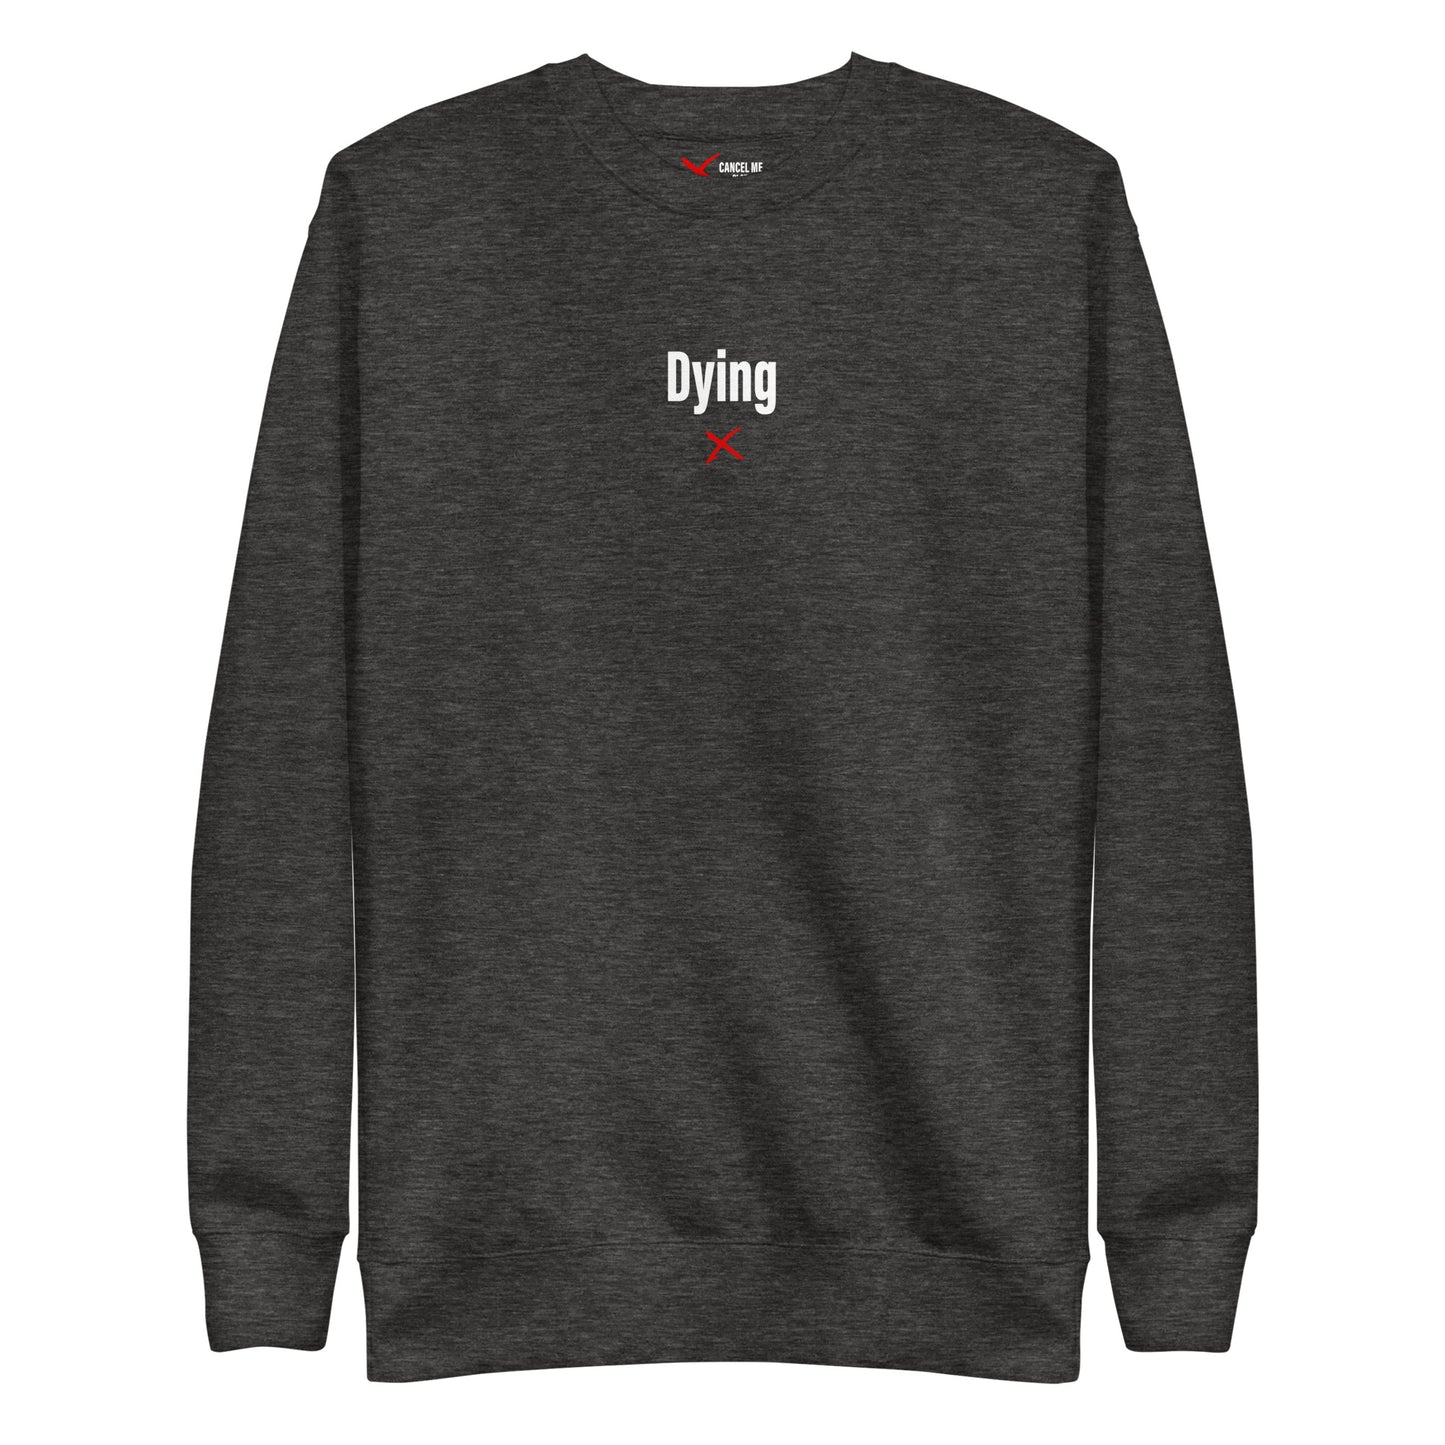 Dying - Sweatshirt